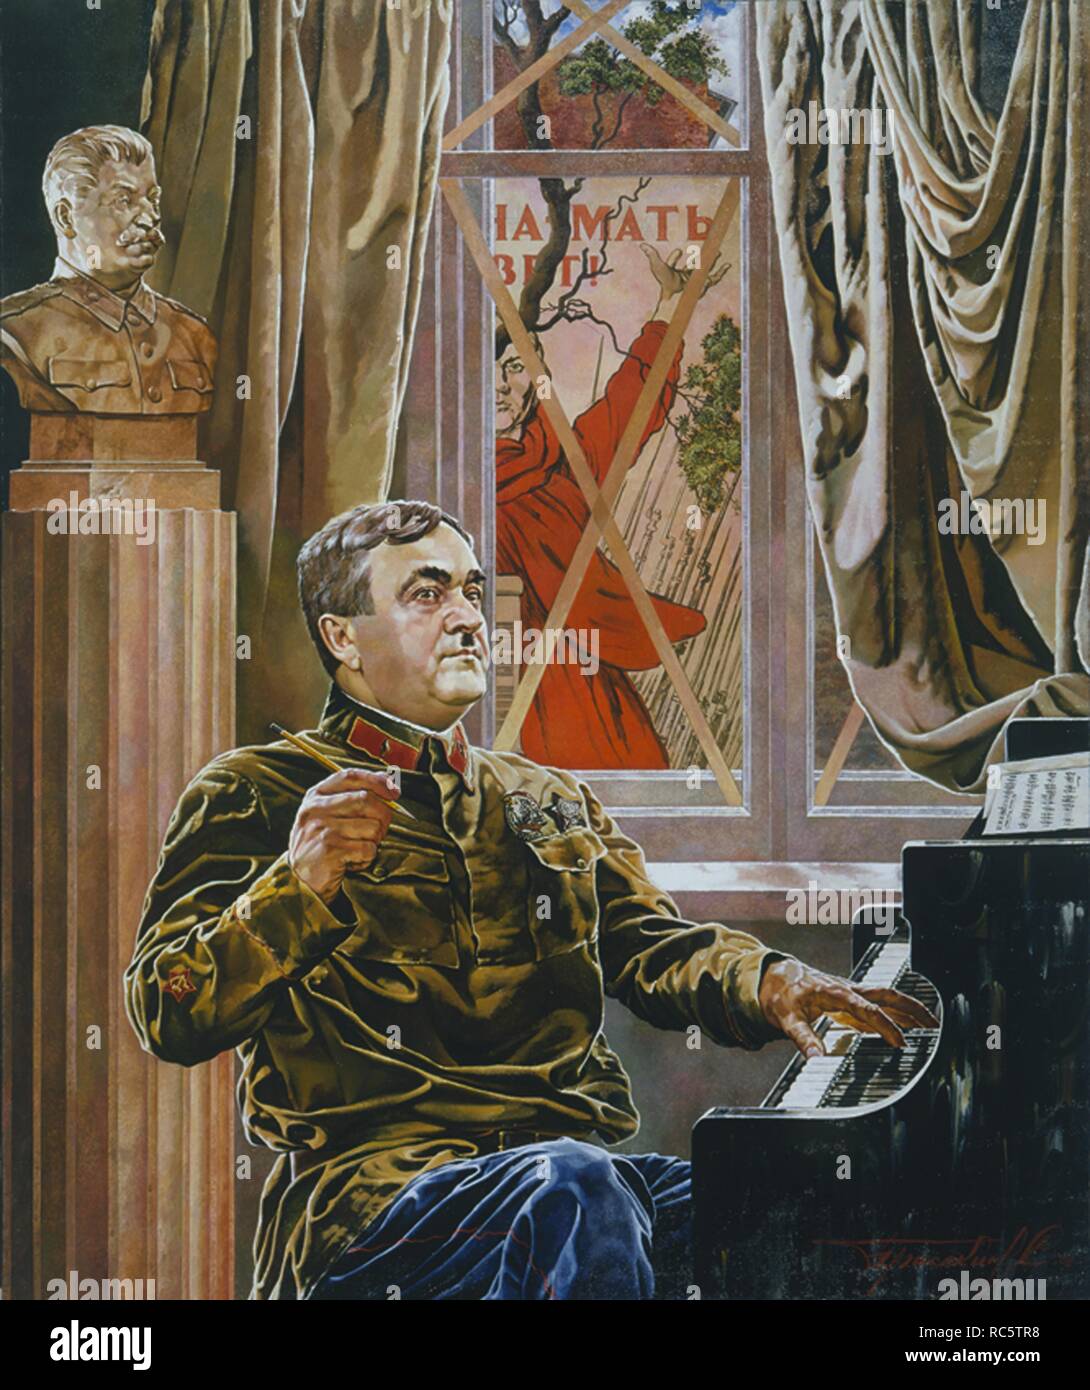 Compositeur soviétique Alexander Vasilievitch Alexandrov. Musée : collection privée. Auteur : Prisekin, Sergueï Nikolaïevitch. Banque D'Images